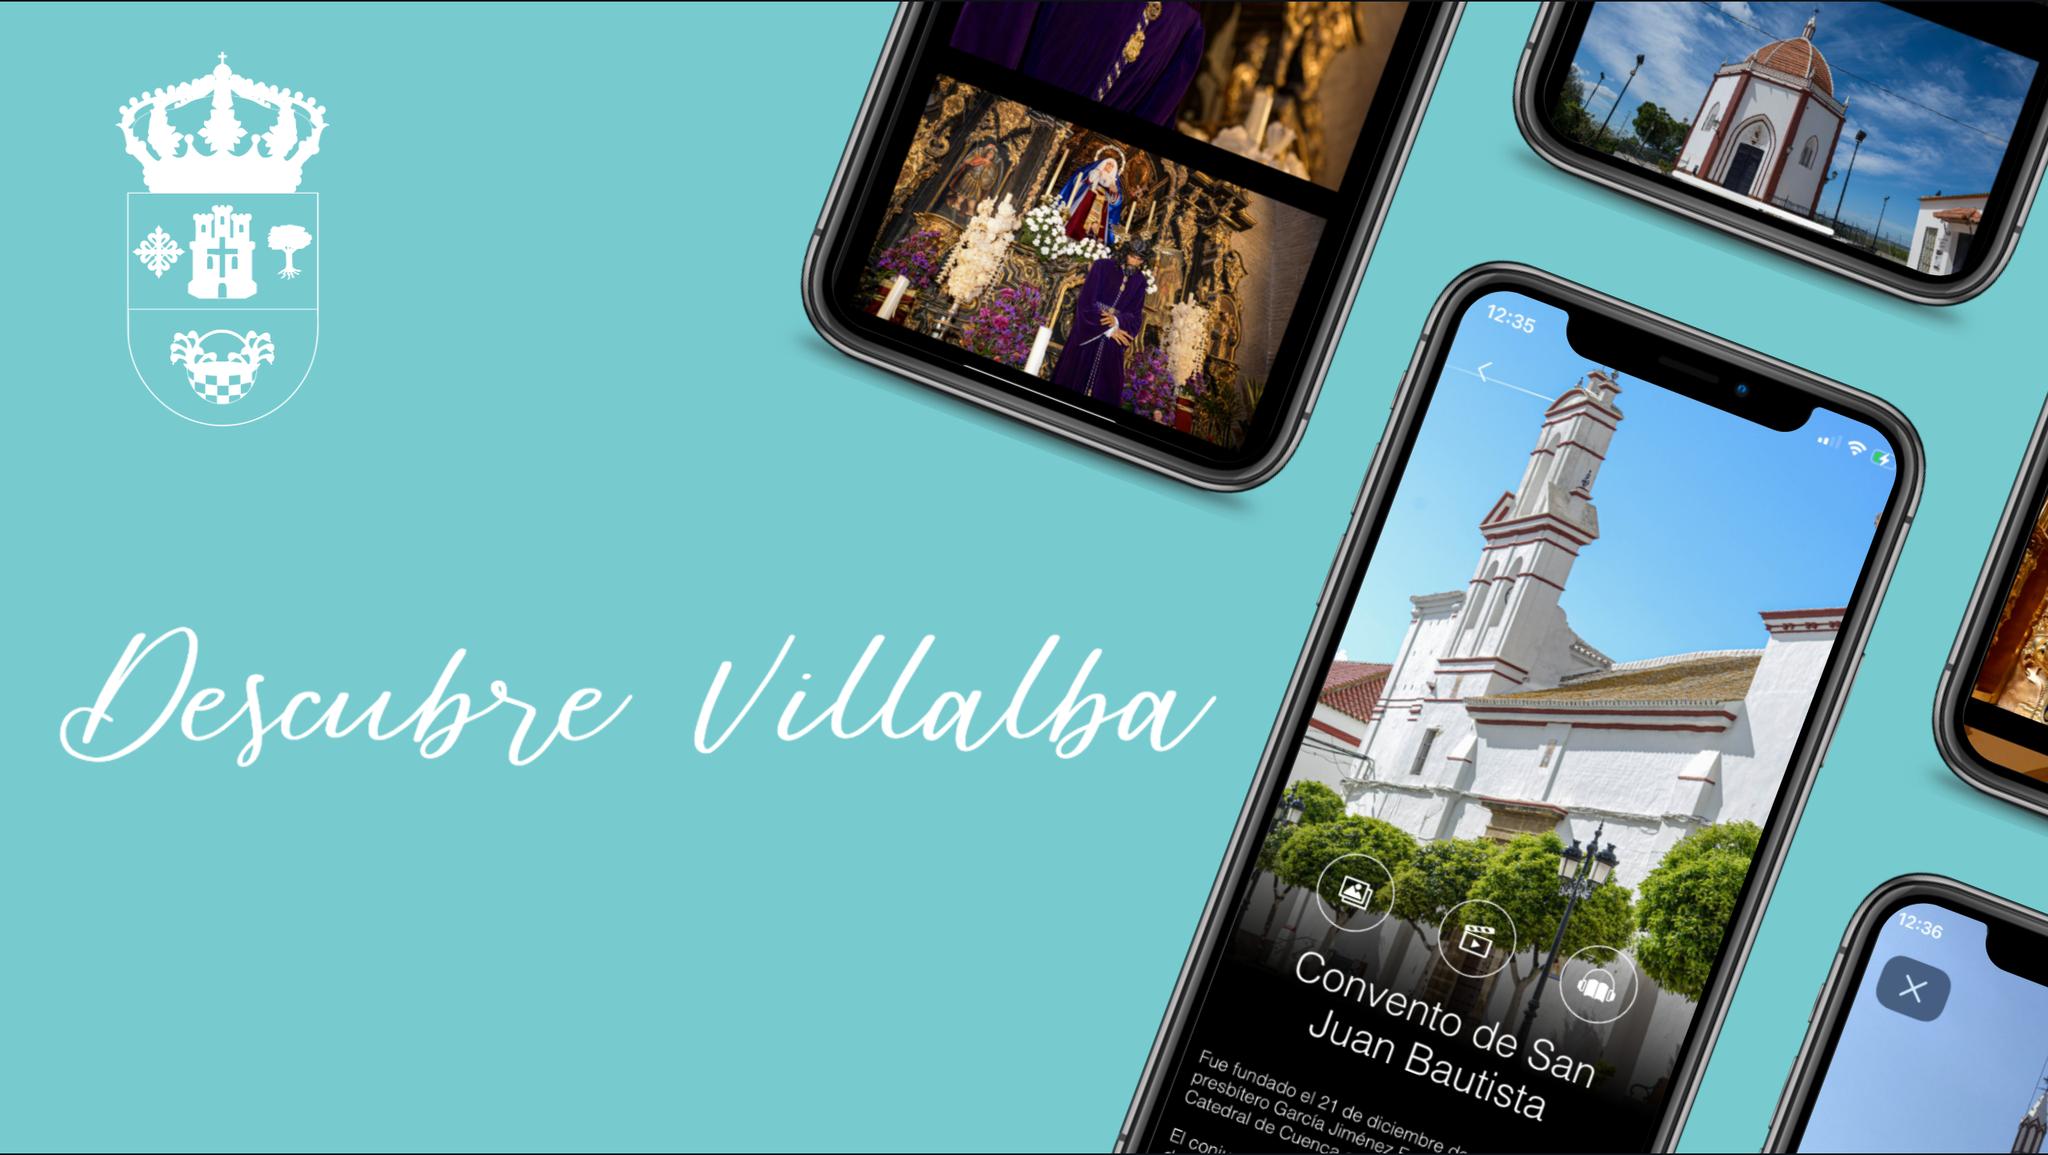 "Descubre Villalba", una nueva forma de conocer el municipio villalbero